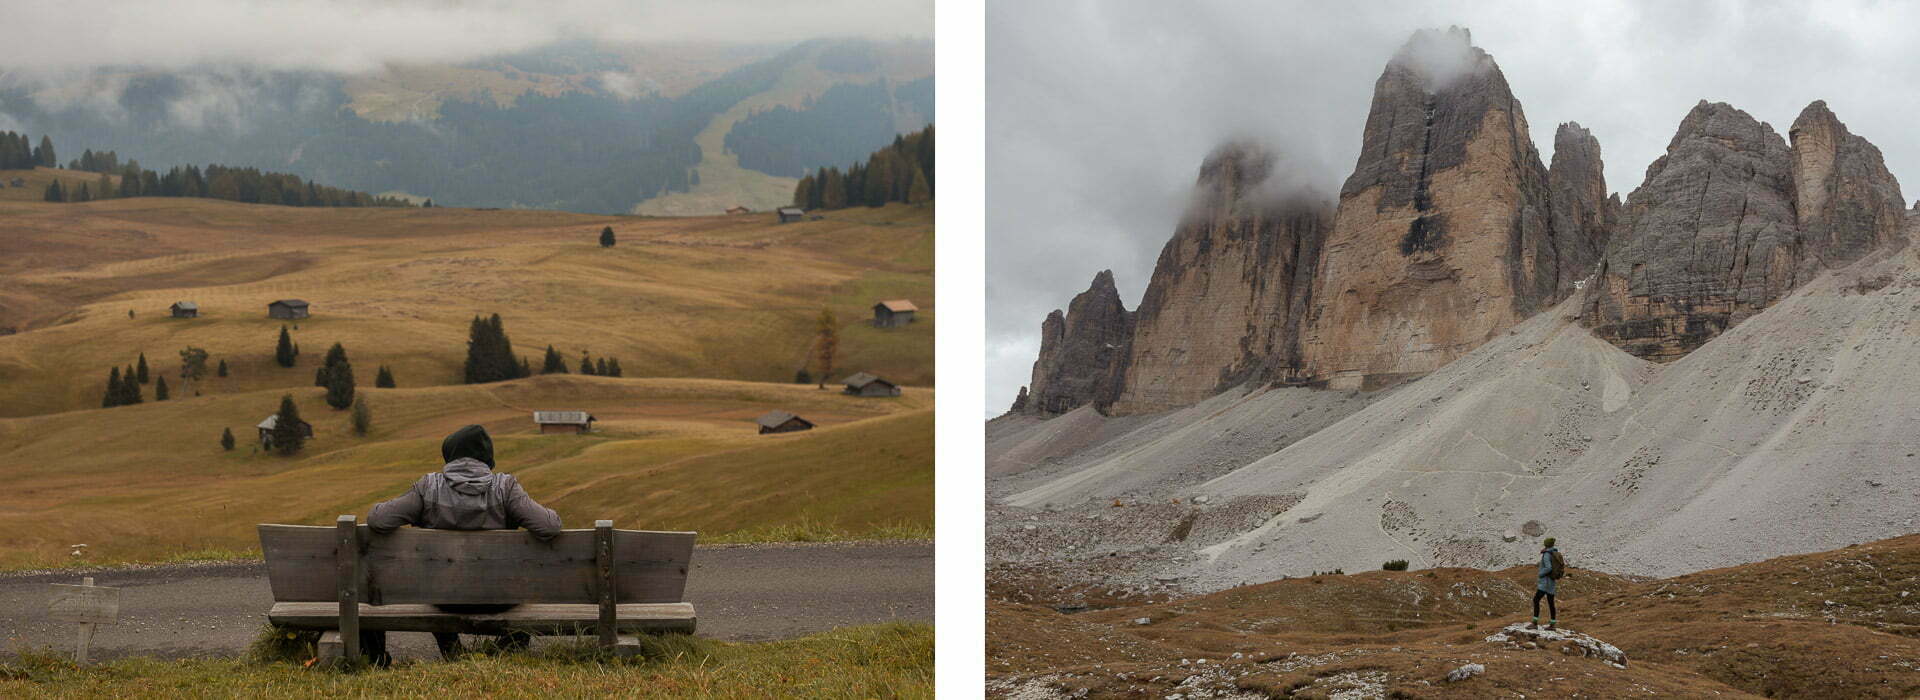 Alpe di Siusi / Tre Cime di Lavaredo / Dolomity